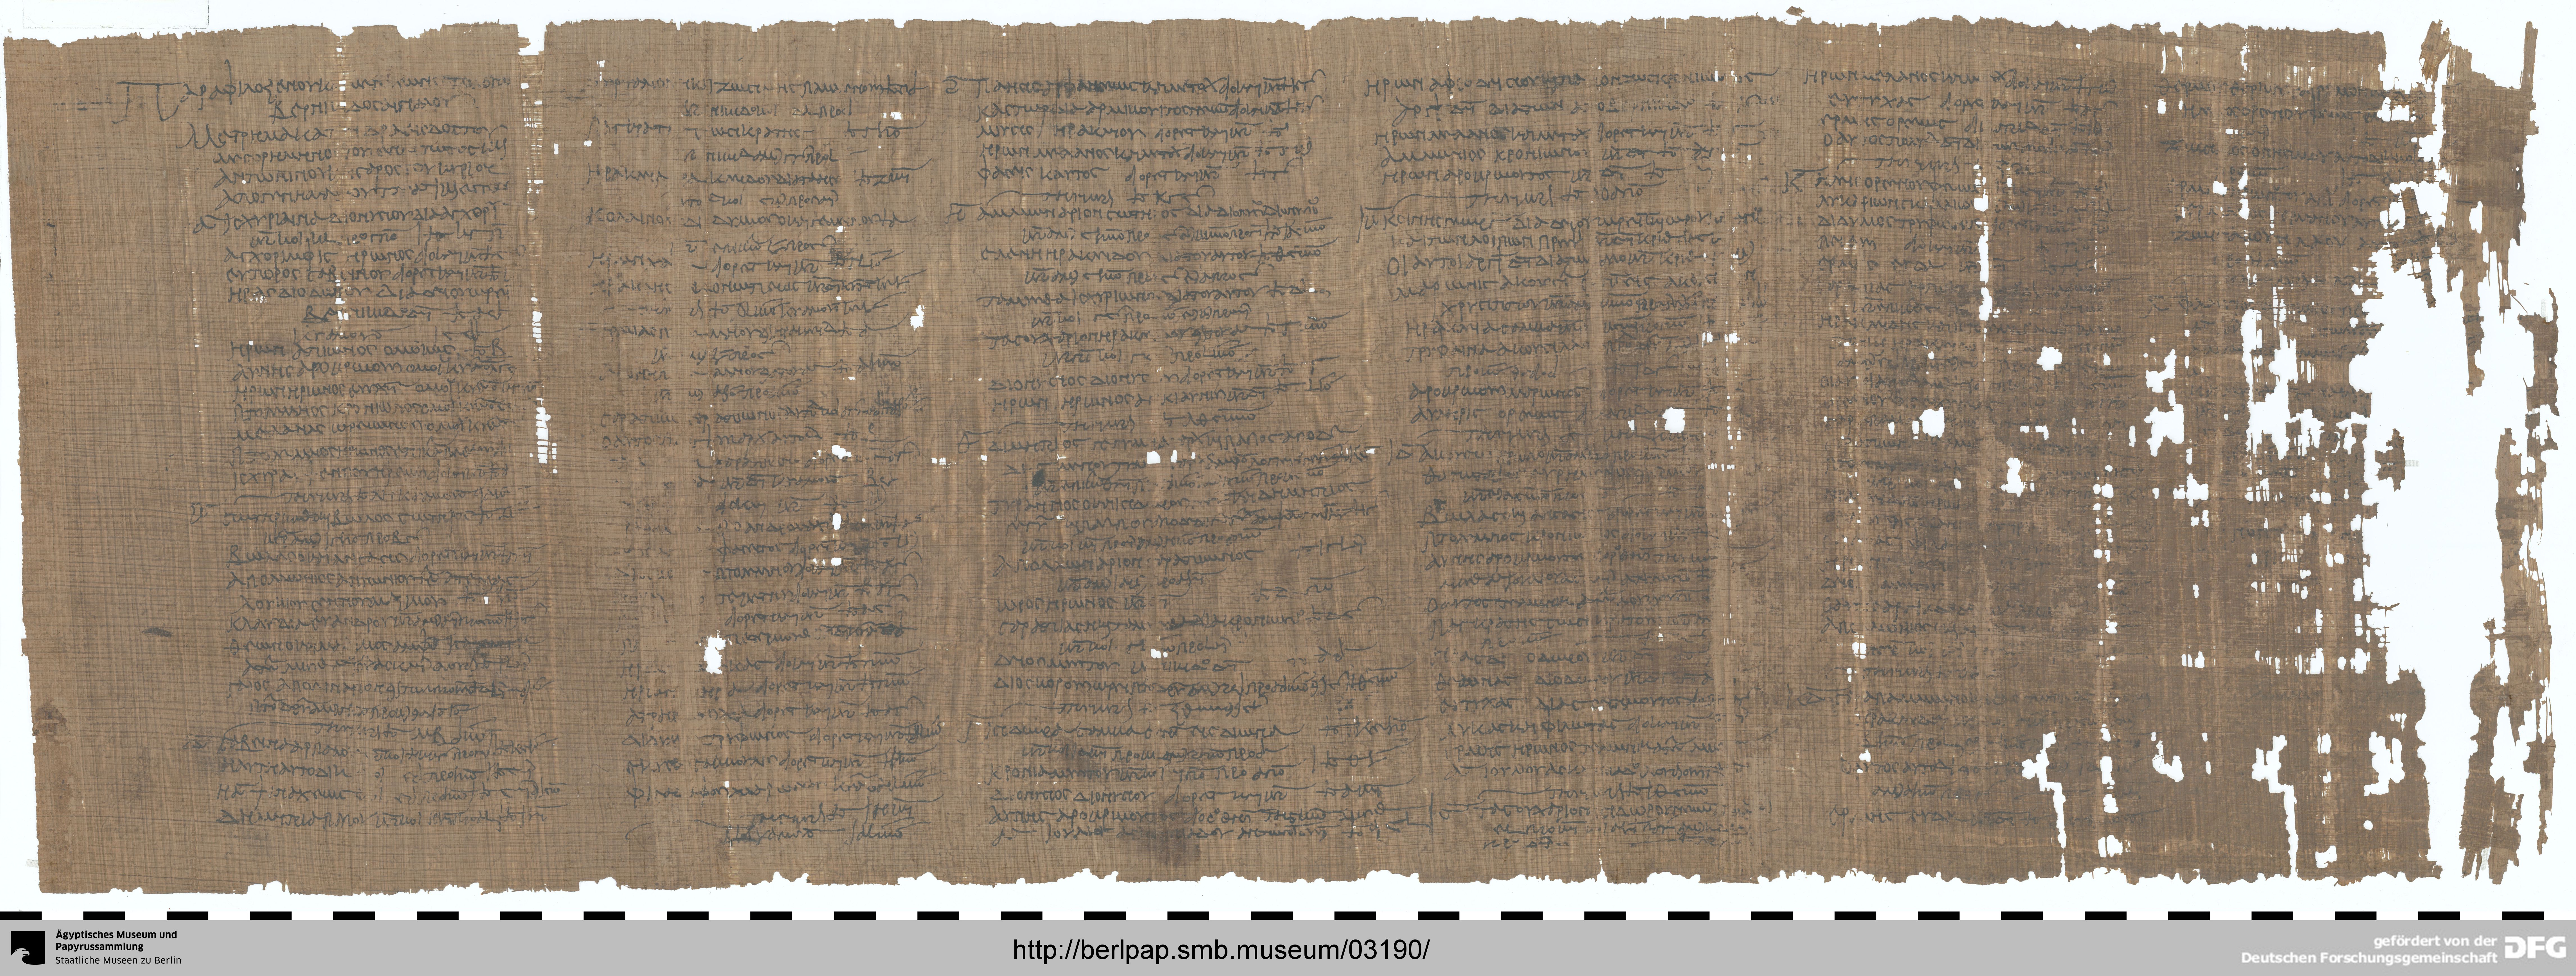 http://berlpap.smb.museum/Original/P_11650-Pl-A_R_001.jpg (Ägyptisches Museum und Papyrussammlung, Staatliche Museen zu Berlin CC BY-NC-SA)